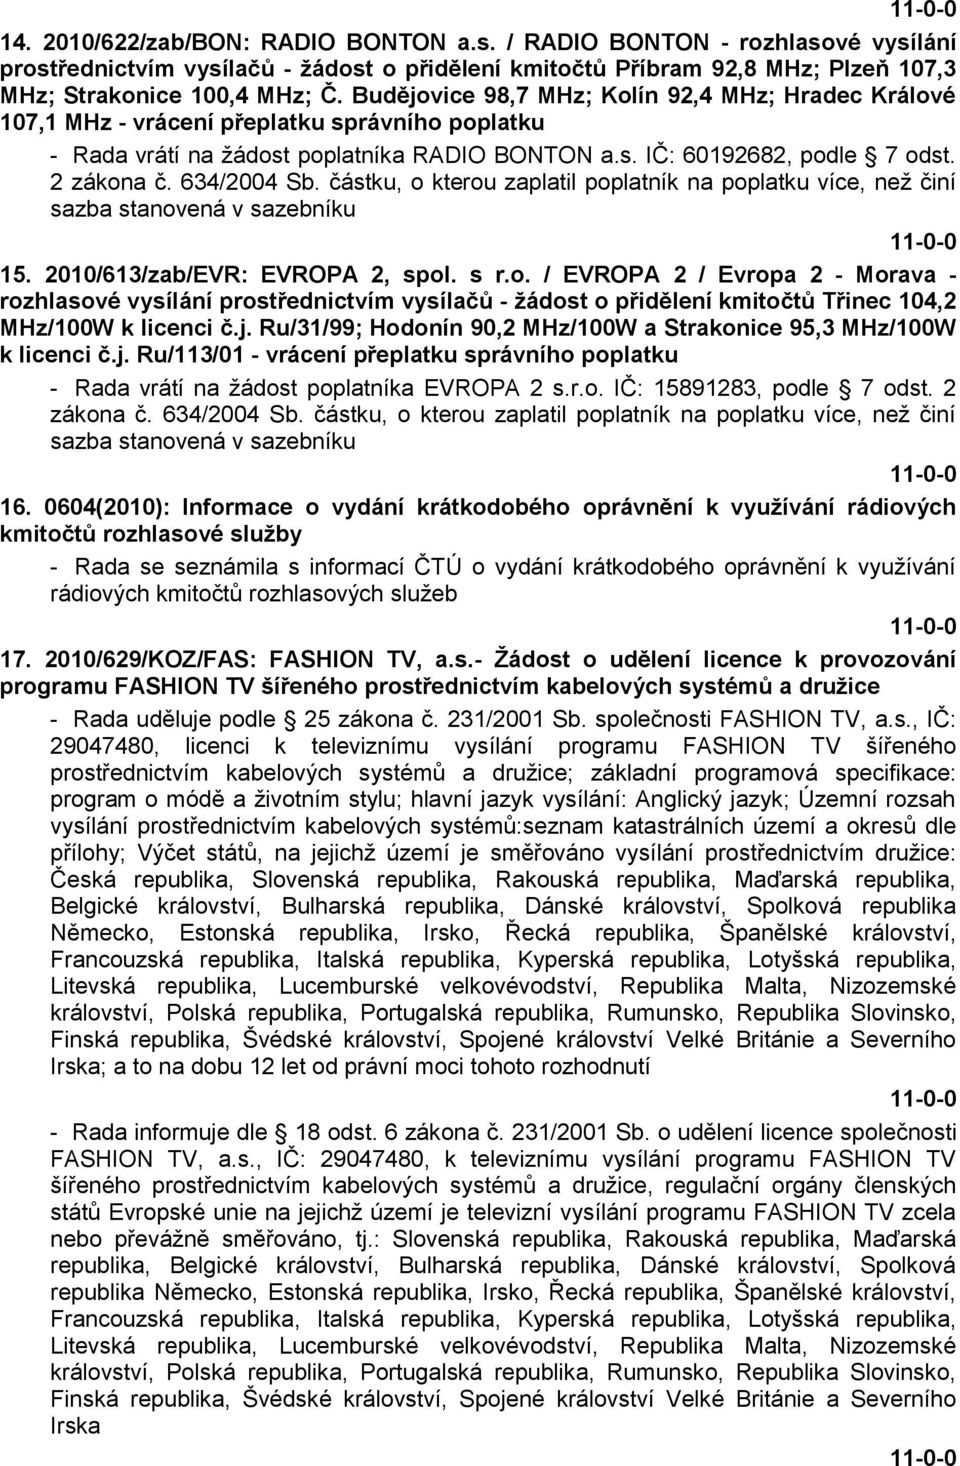 634/2004 Sb. částku, o kterou zaplatil poplatník na poplatku více, neţ činí sazba stanovená v sazebníku 15. 2010/613/zab/EVR: EVROPA 2, spol. s r.o. / EVROPA 2 / Evropa 2 - Morava - rozhlasové vysílání prostřednictvím vysílačů - ţádost o přidělení kmitočtů Třinec 104,2 MHz/100W k licenci č.